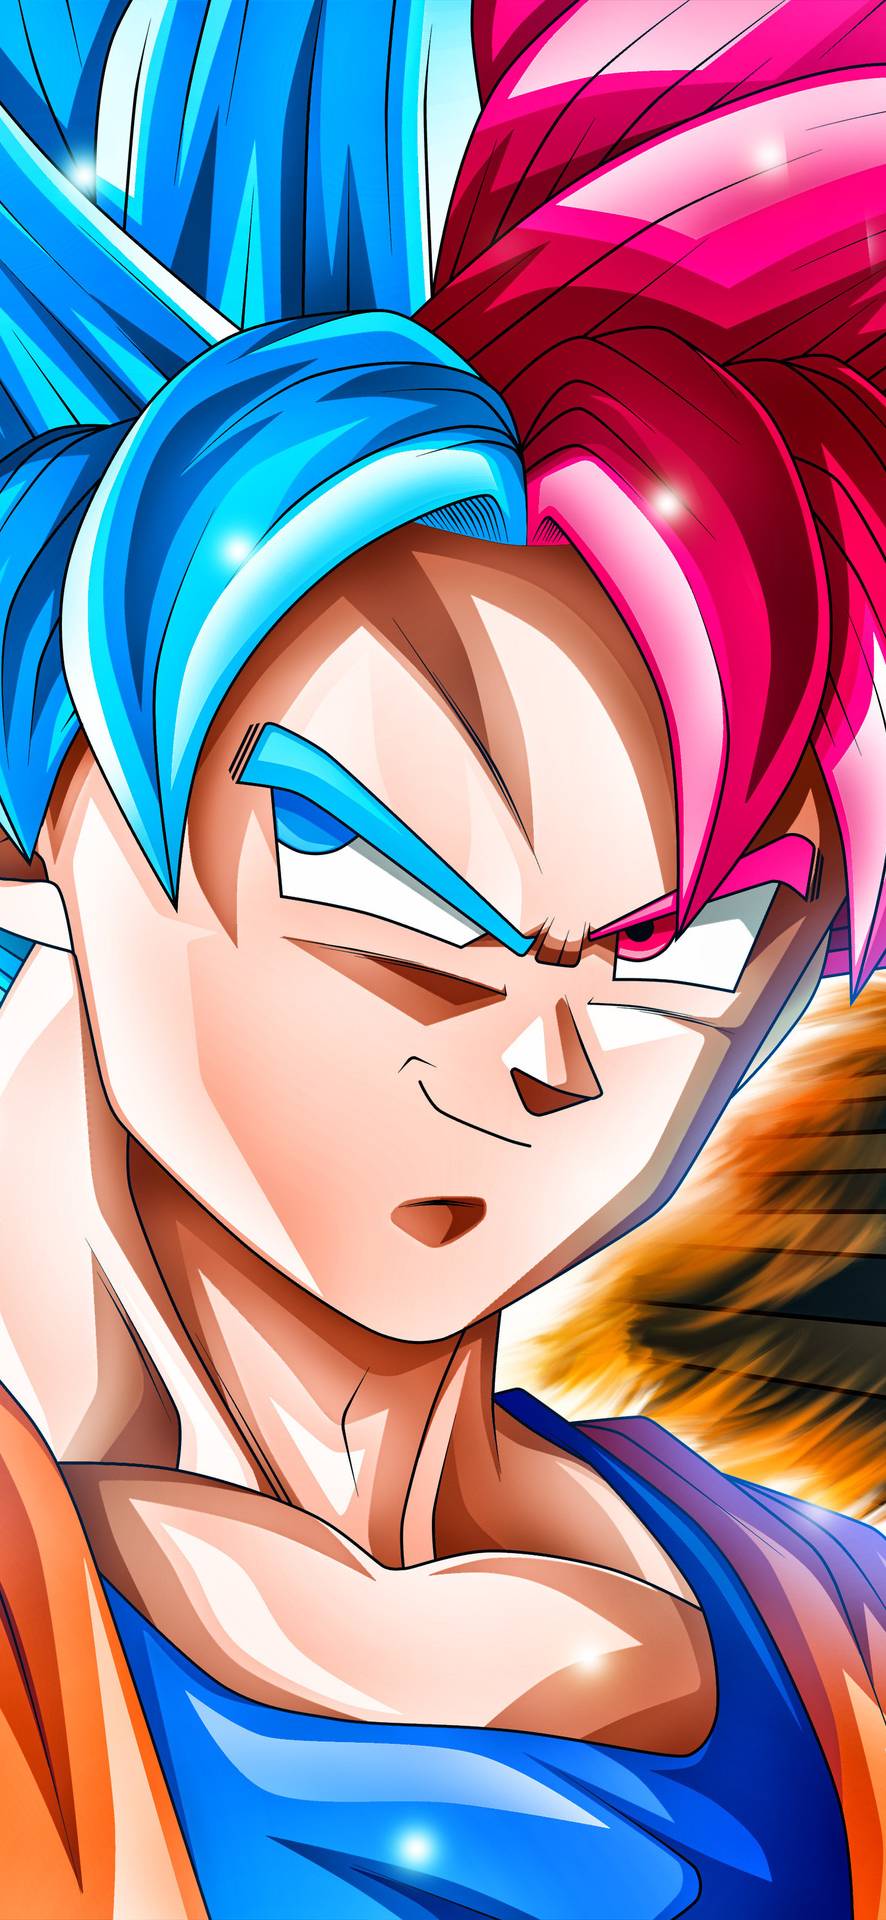 Hd Goku Wallpaper Ball Super Wallpaper iPhone X Wallpaper & Background Download